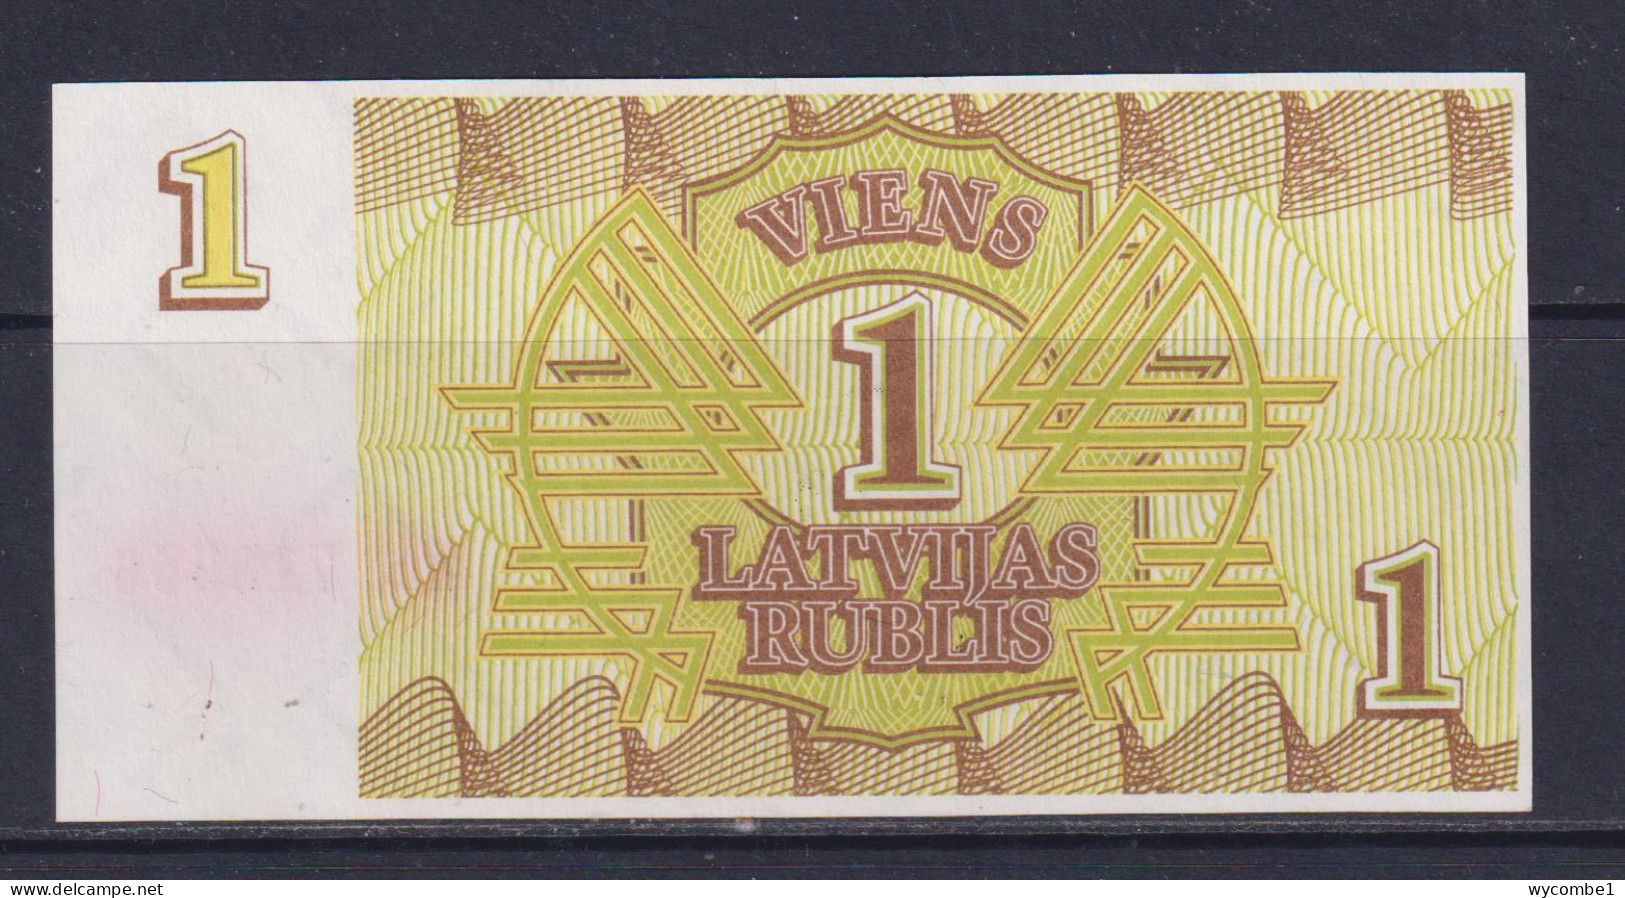 LATVIA - 1992 1 Rublis UNC Banknote - Latvia